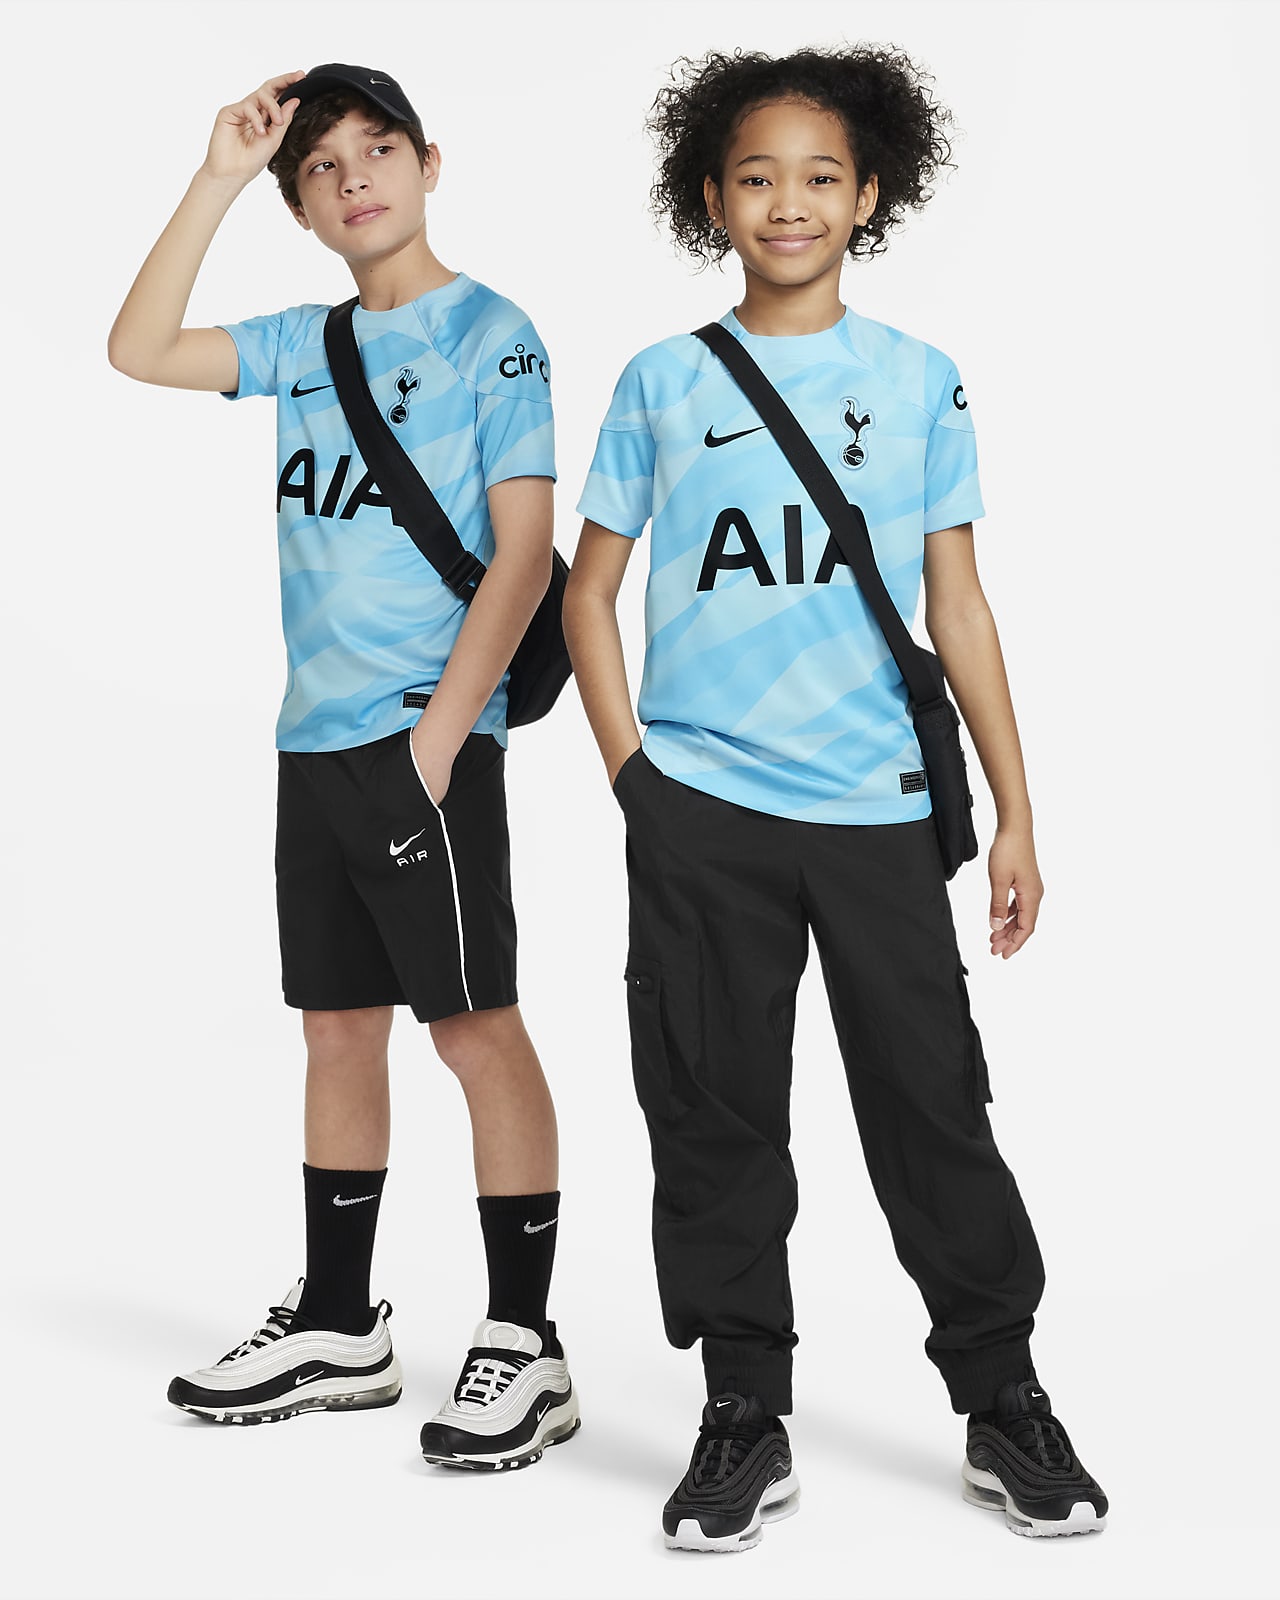 Camiseta Portero Tottenham 2022/23 Niño - Cuirz